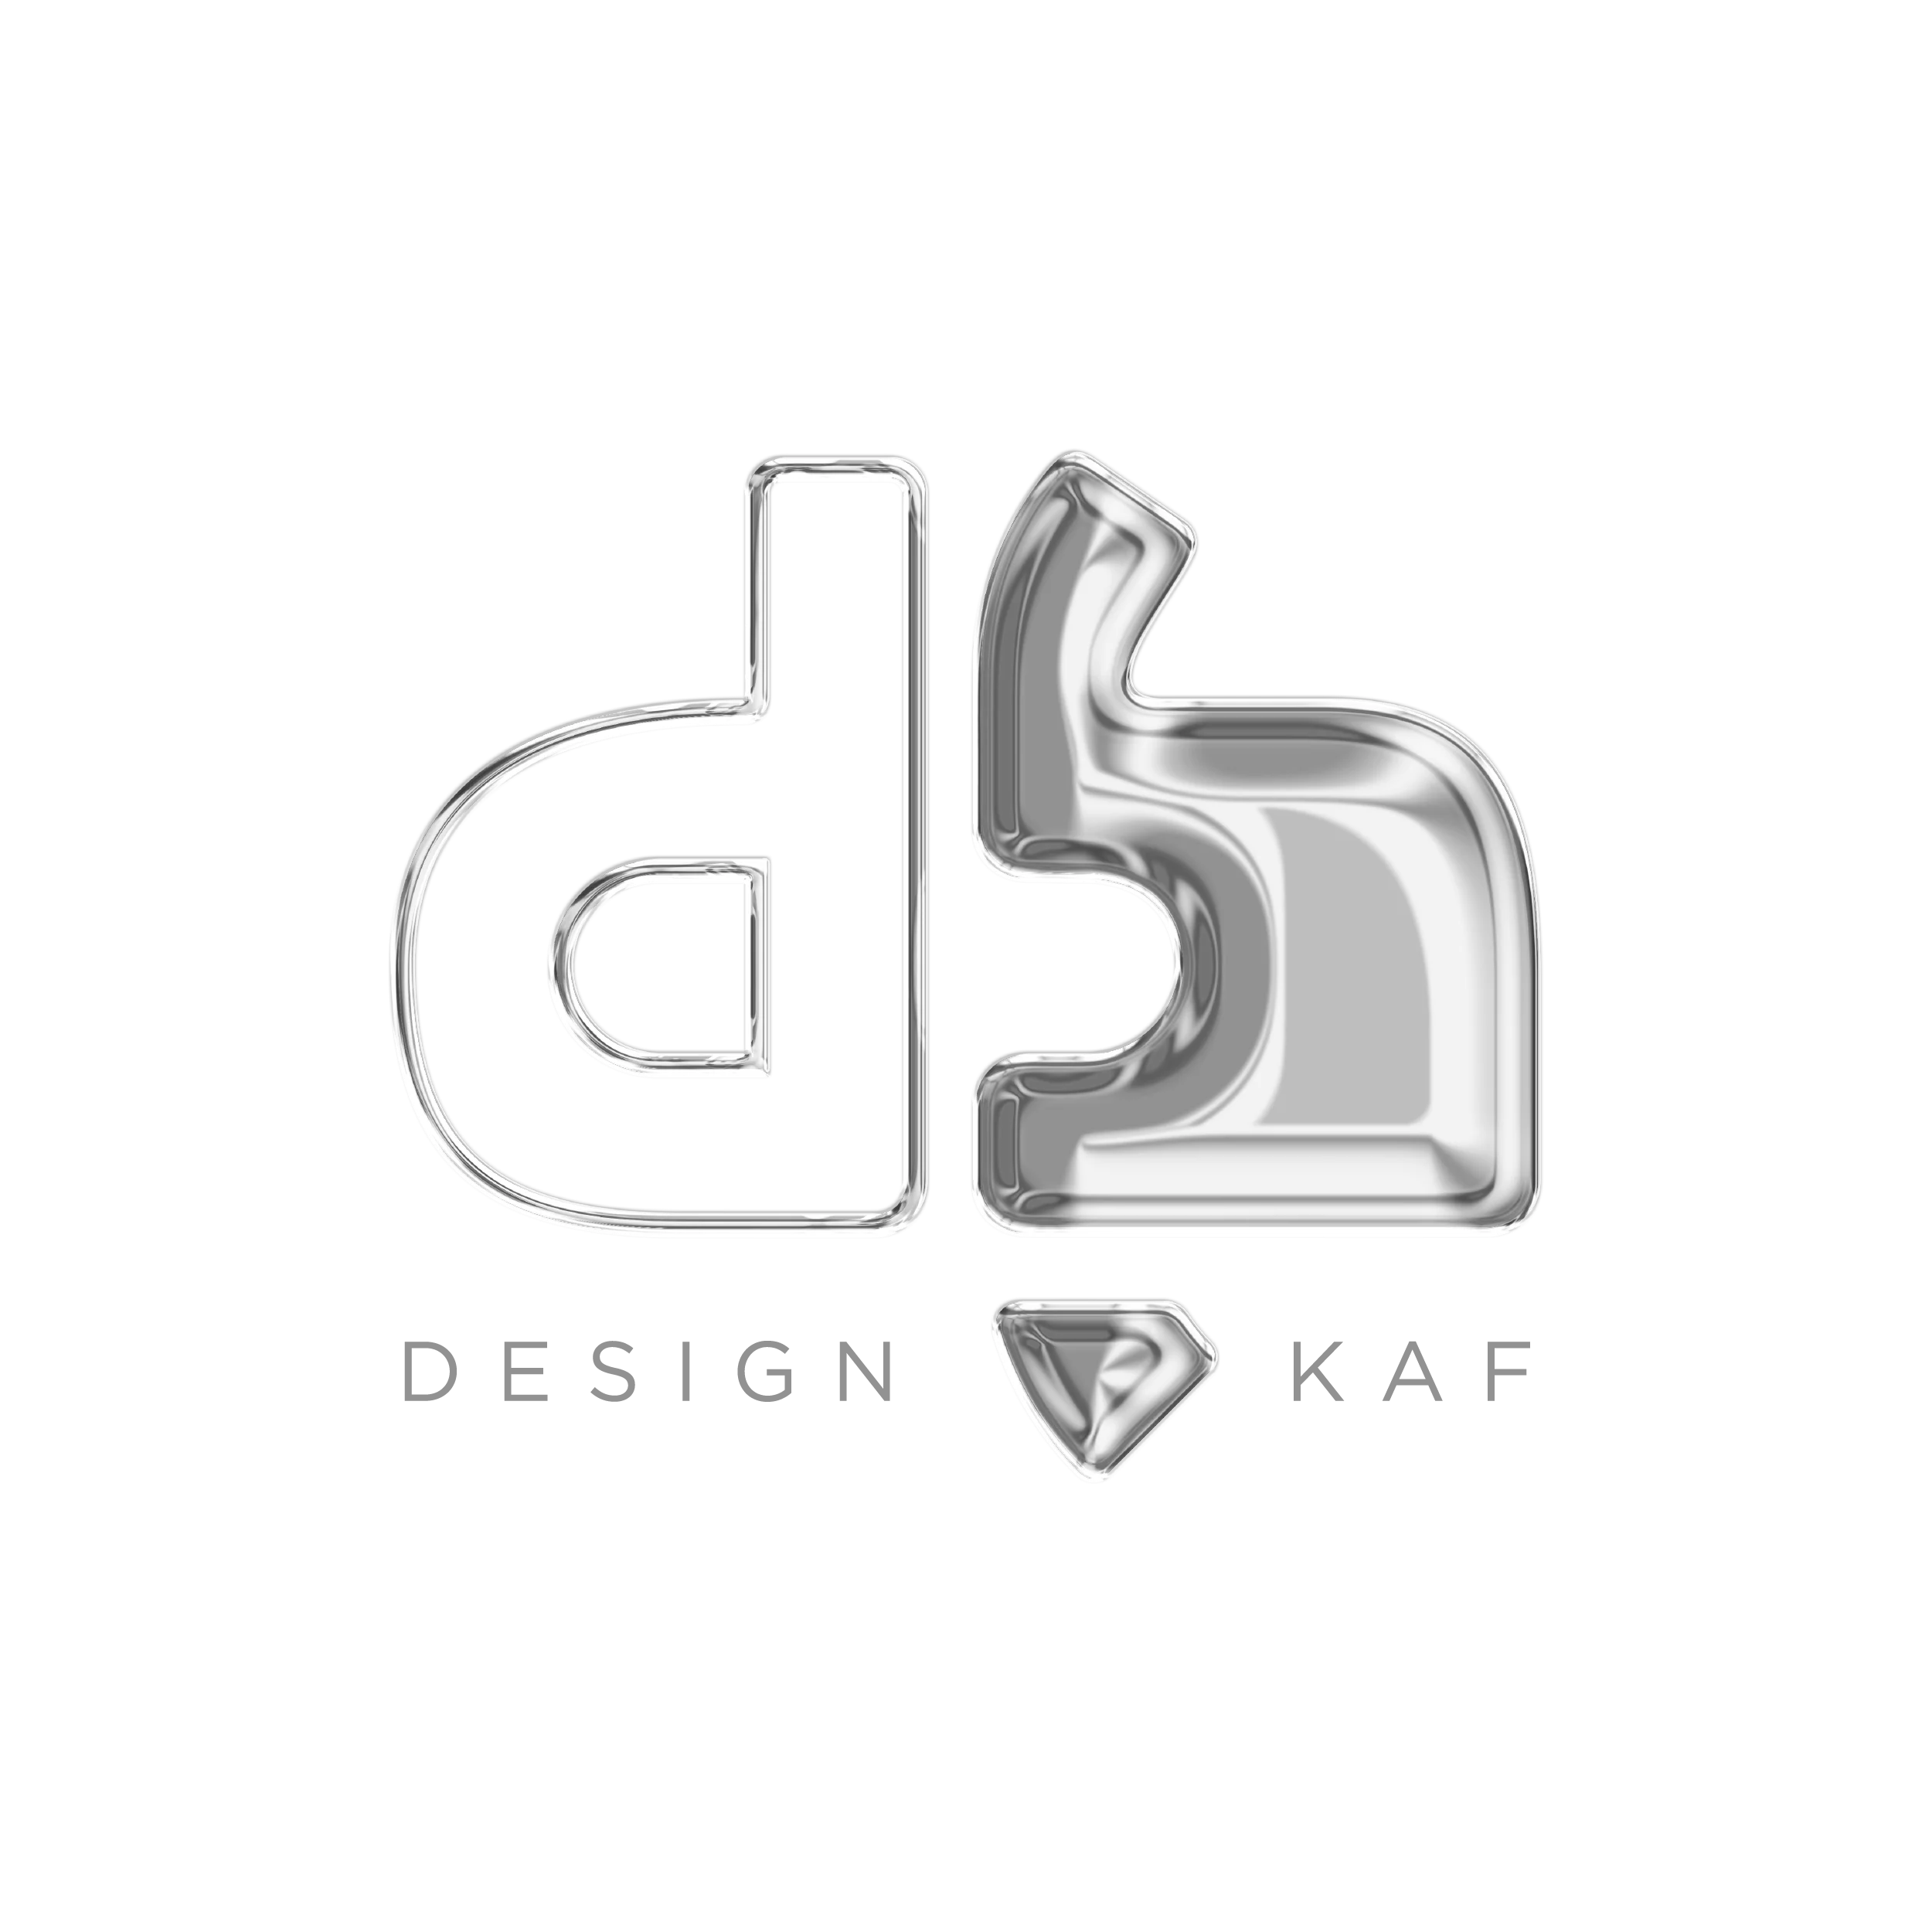 Design Kaf International